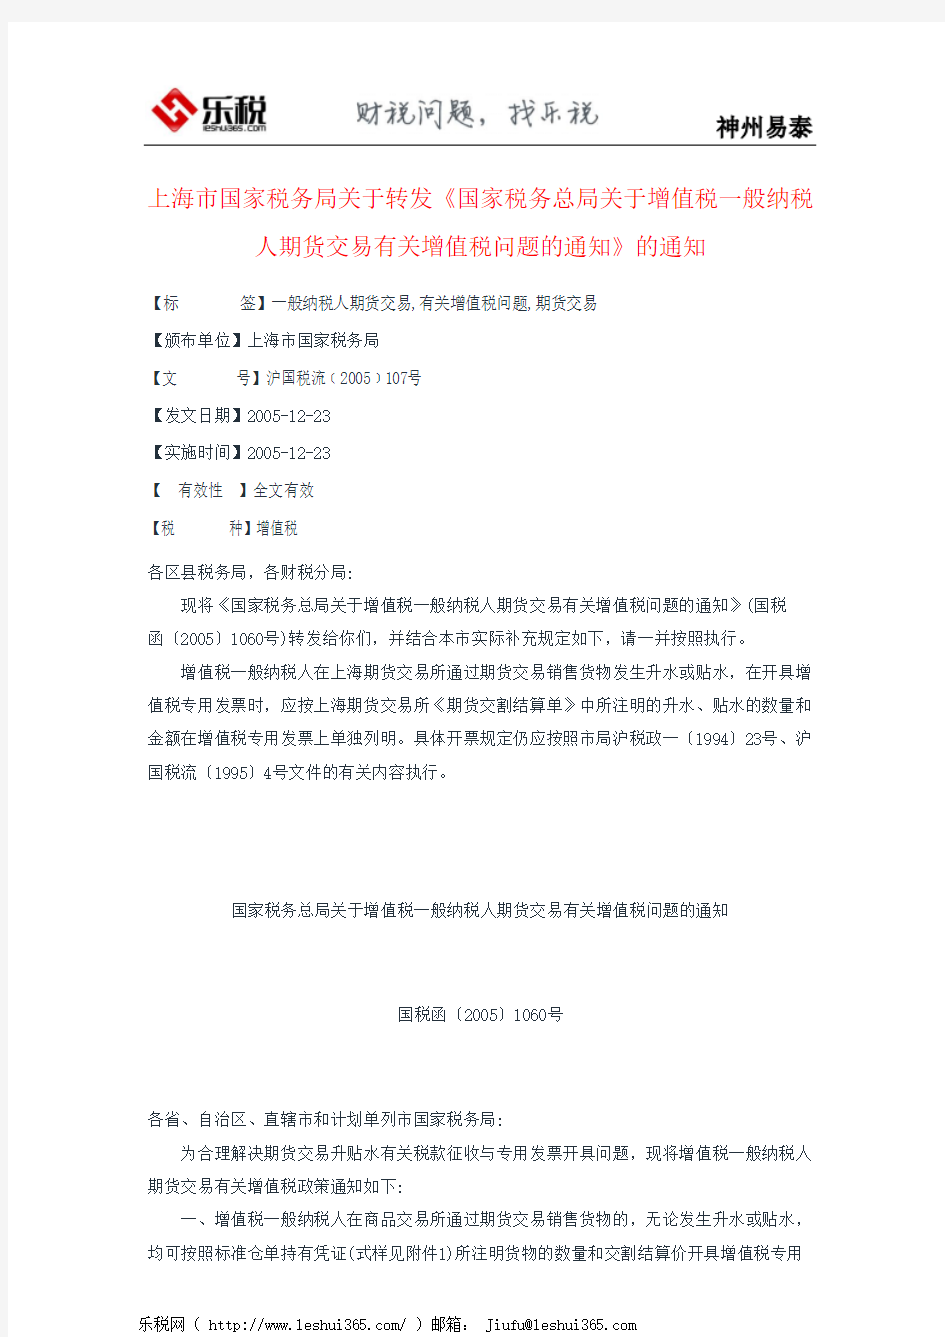 上海市国家税务局关于转发《国家税务总局关于增值税一般纳税人期